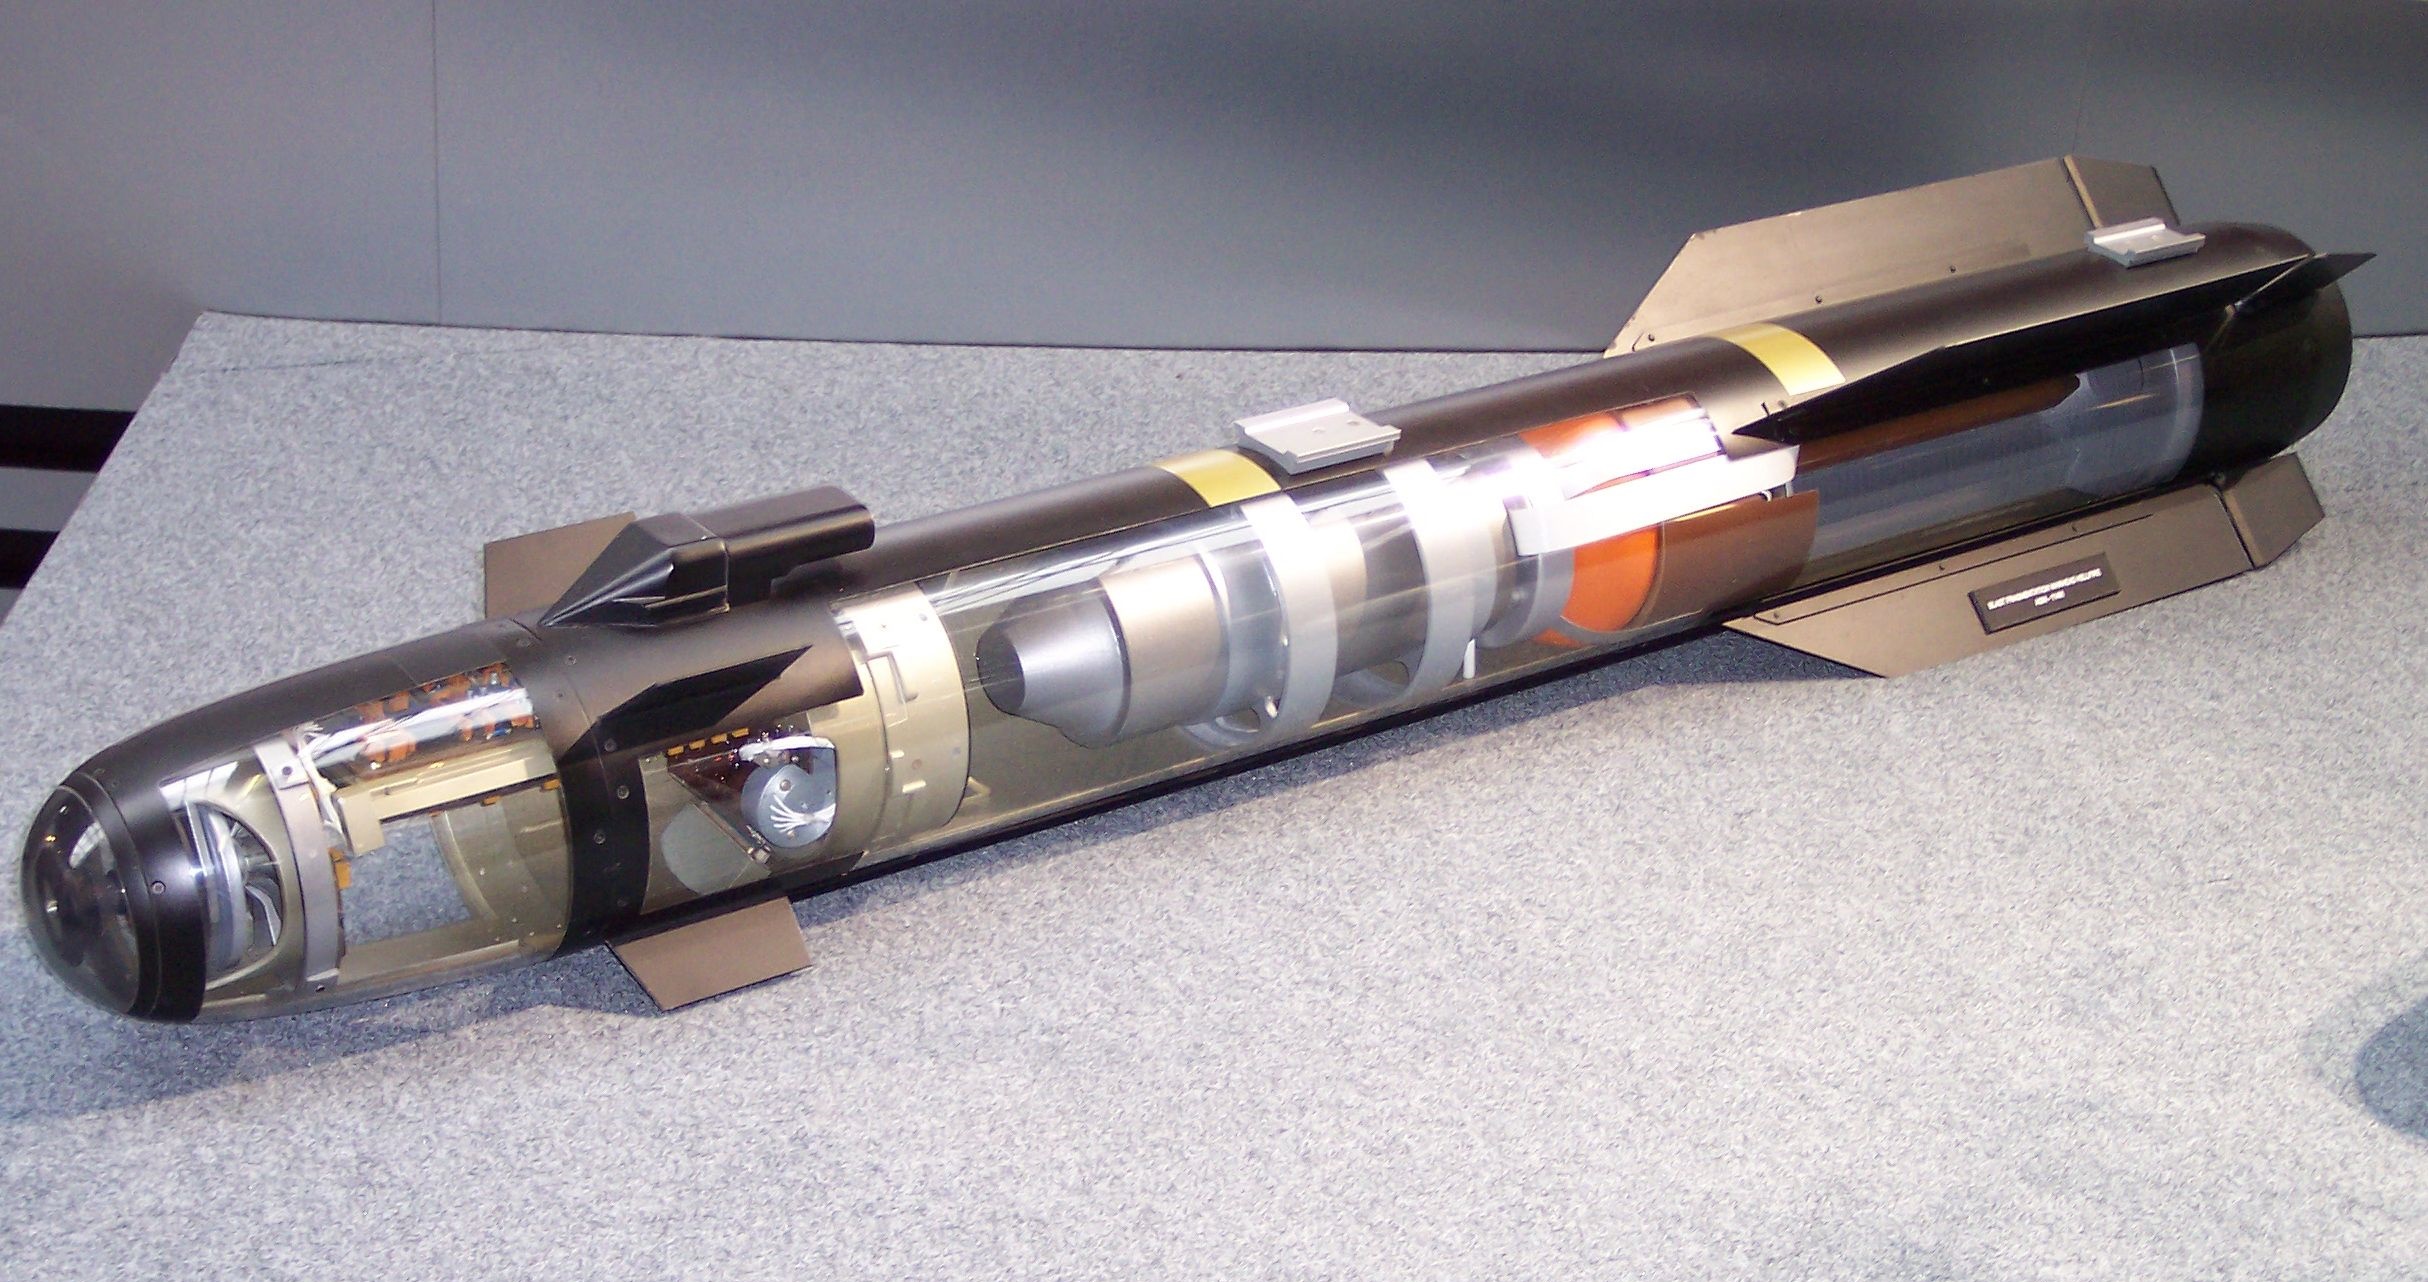 Tên lửa chống tăng Hellfire được đánh giá là khắc tinh của các phương tiện thiết giáp mặt đất